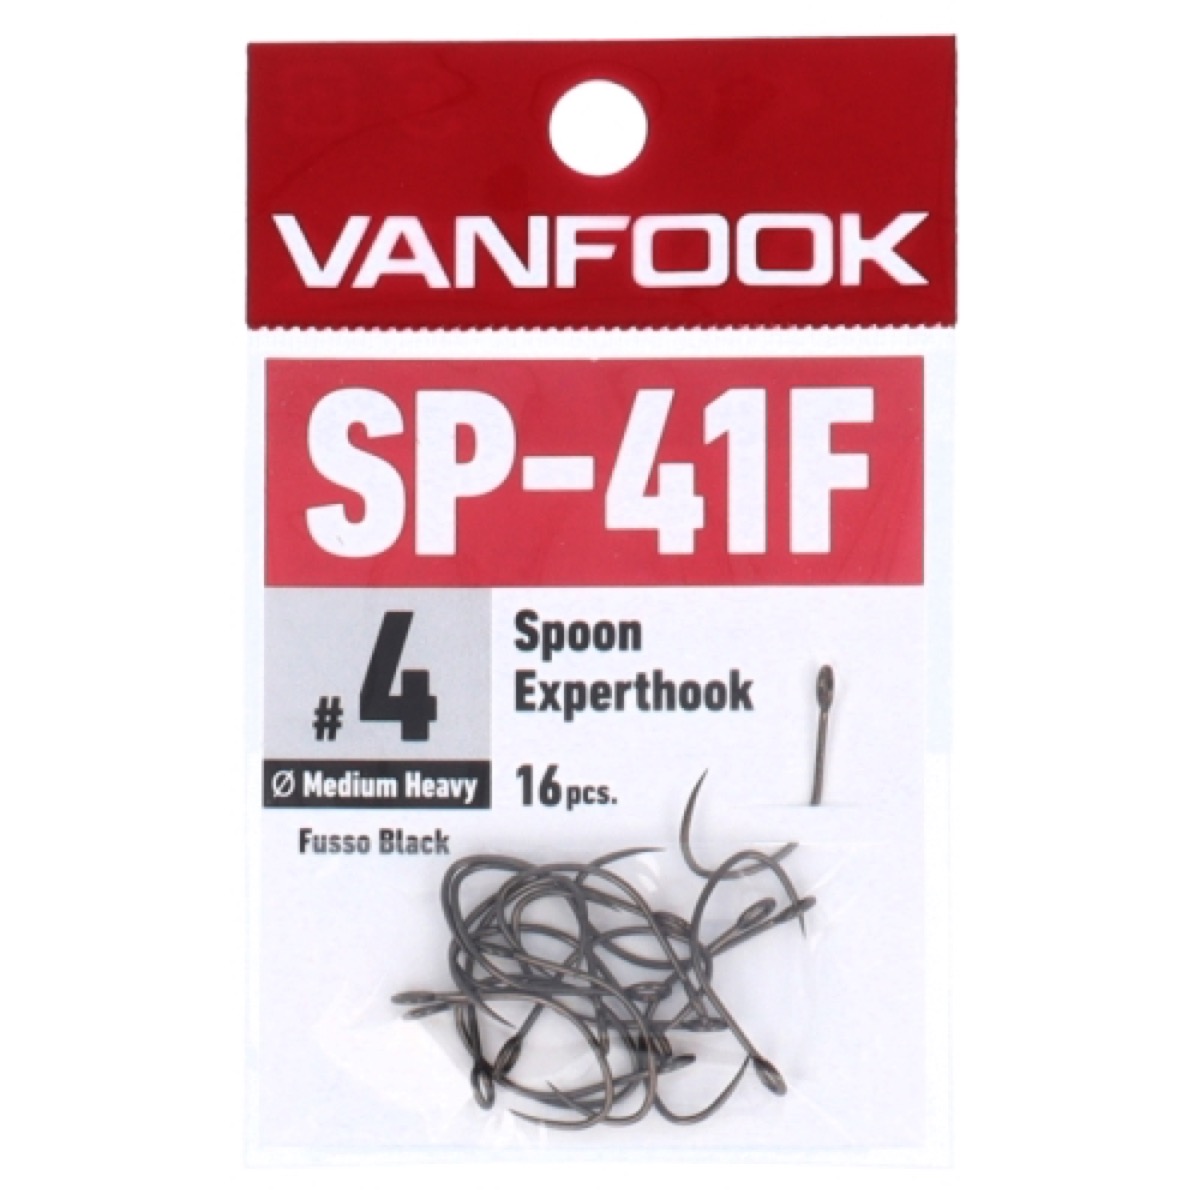 ヴァンフック(VANFOOK) スプーンエキスパートフック ミディアムヘビーワイヤー SP-41F #4 ネコポス(メール便)対象商品